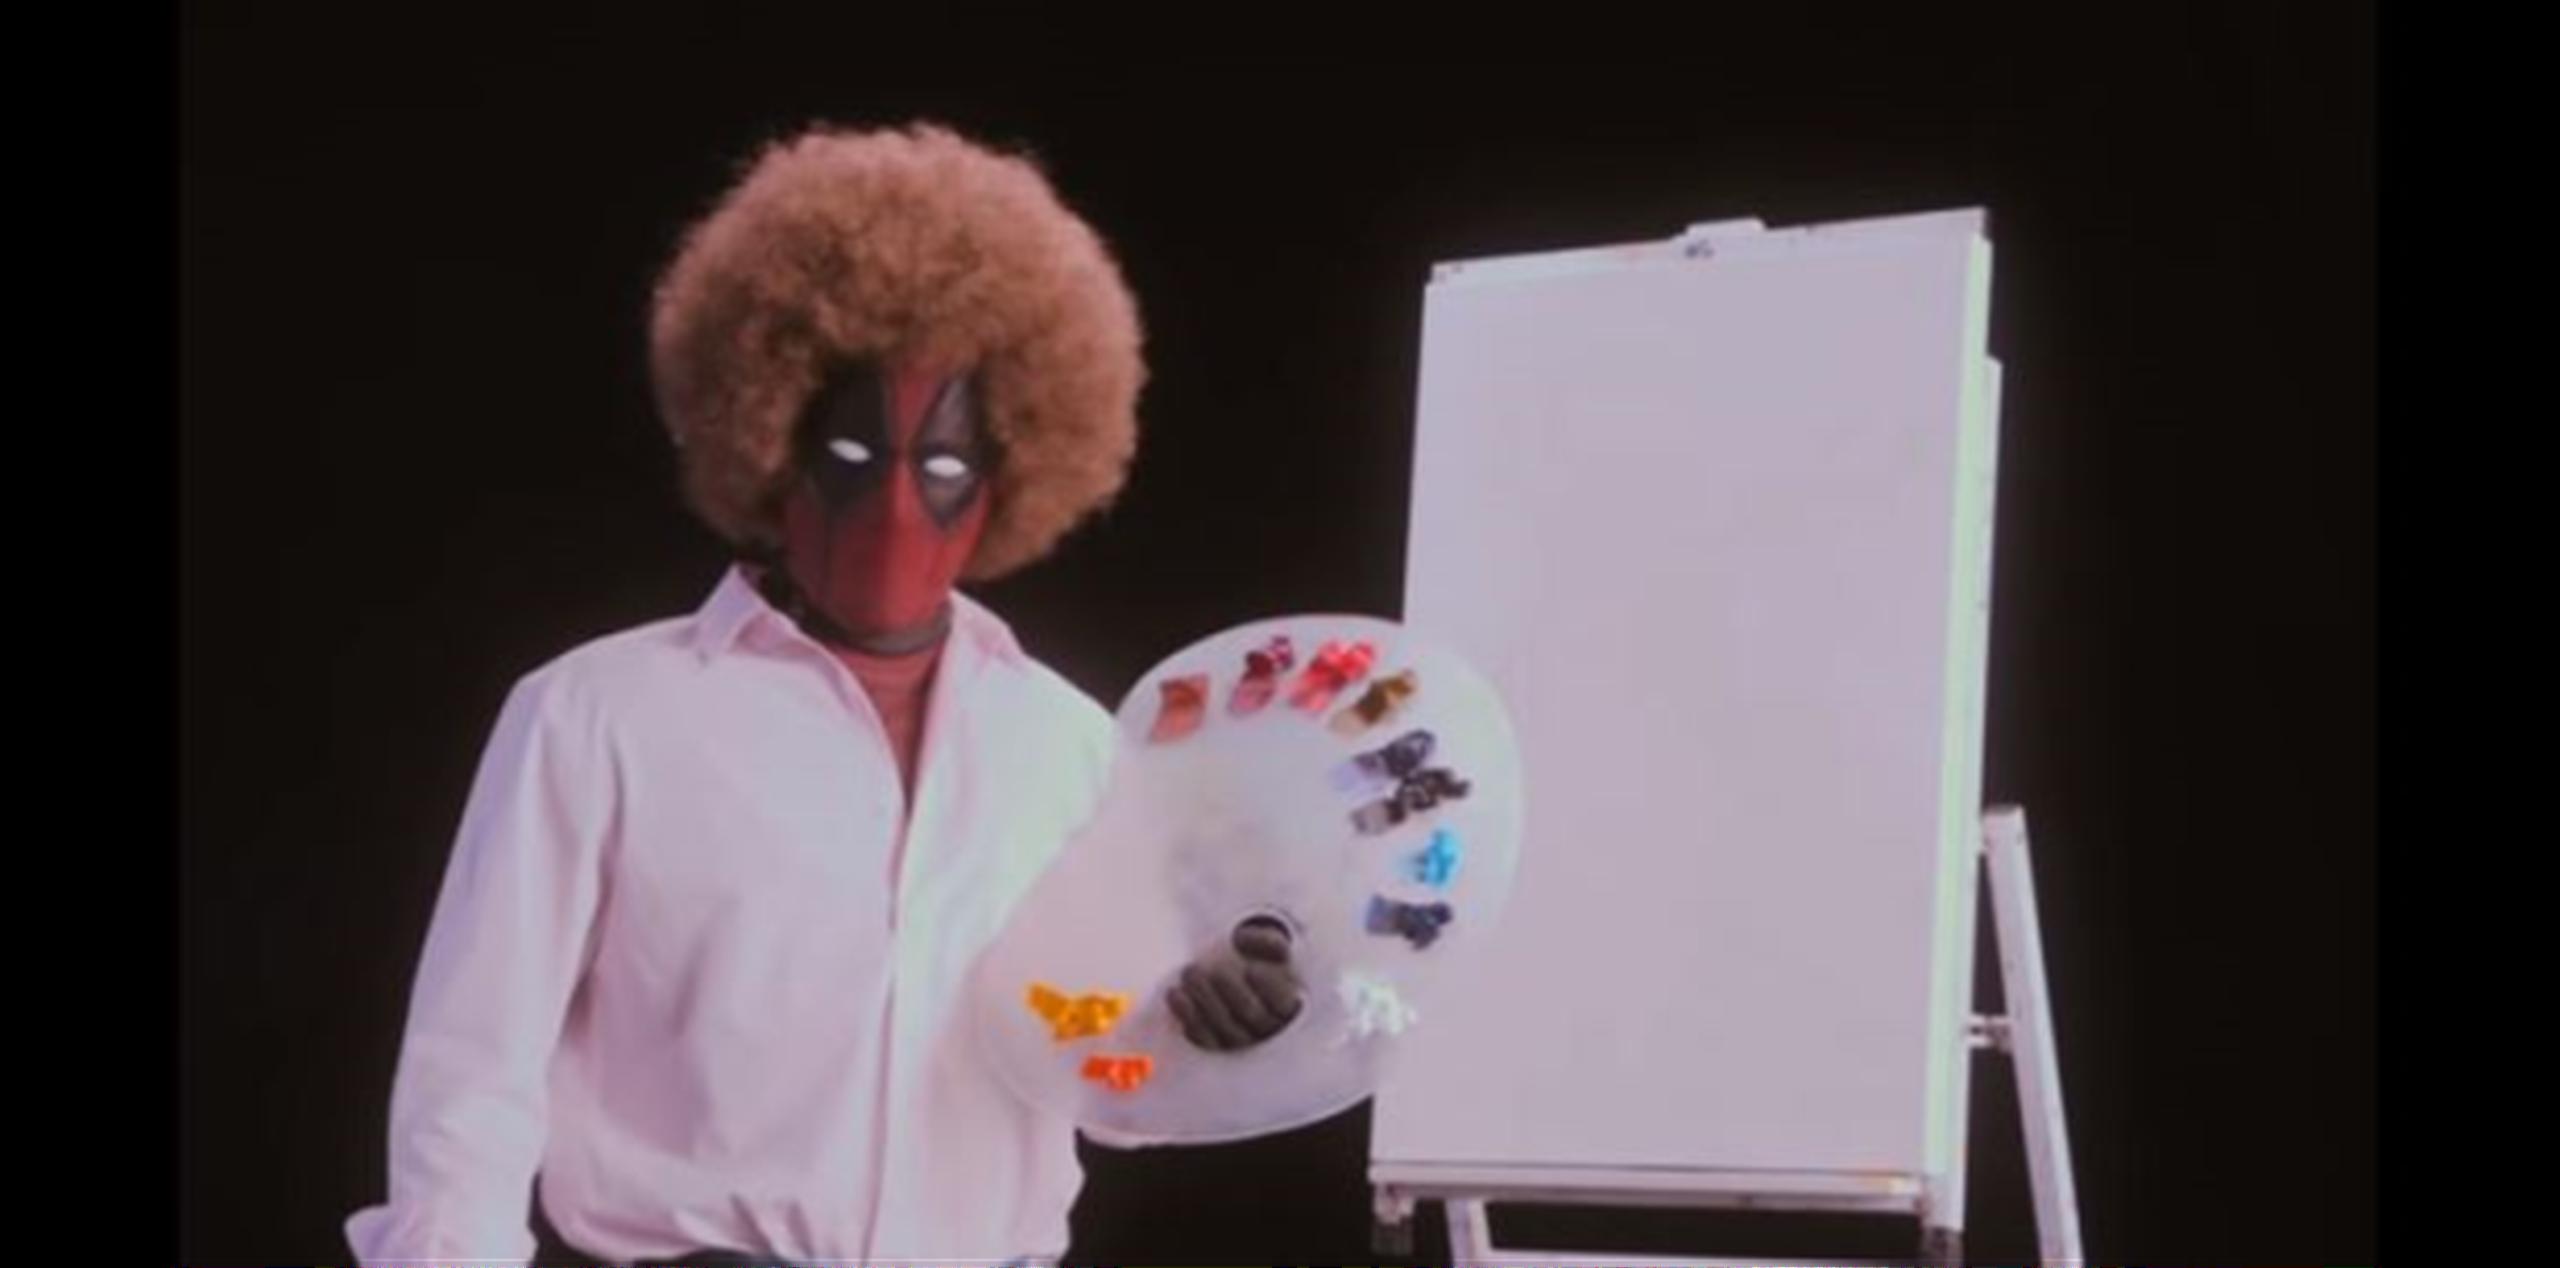 El vídeo muestra a un supuesto Bob Ross pintando un cuadro que termina siendo una inspiración de "Freedom from Want". (Captura)